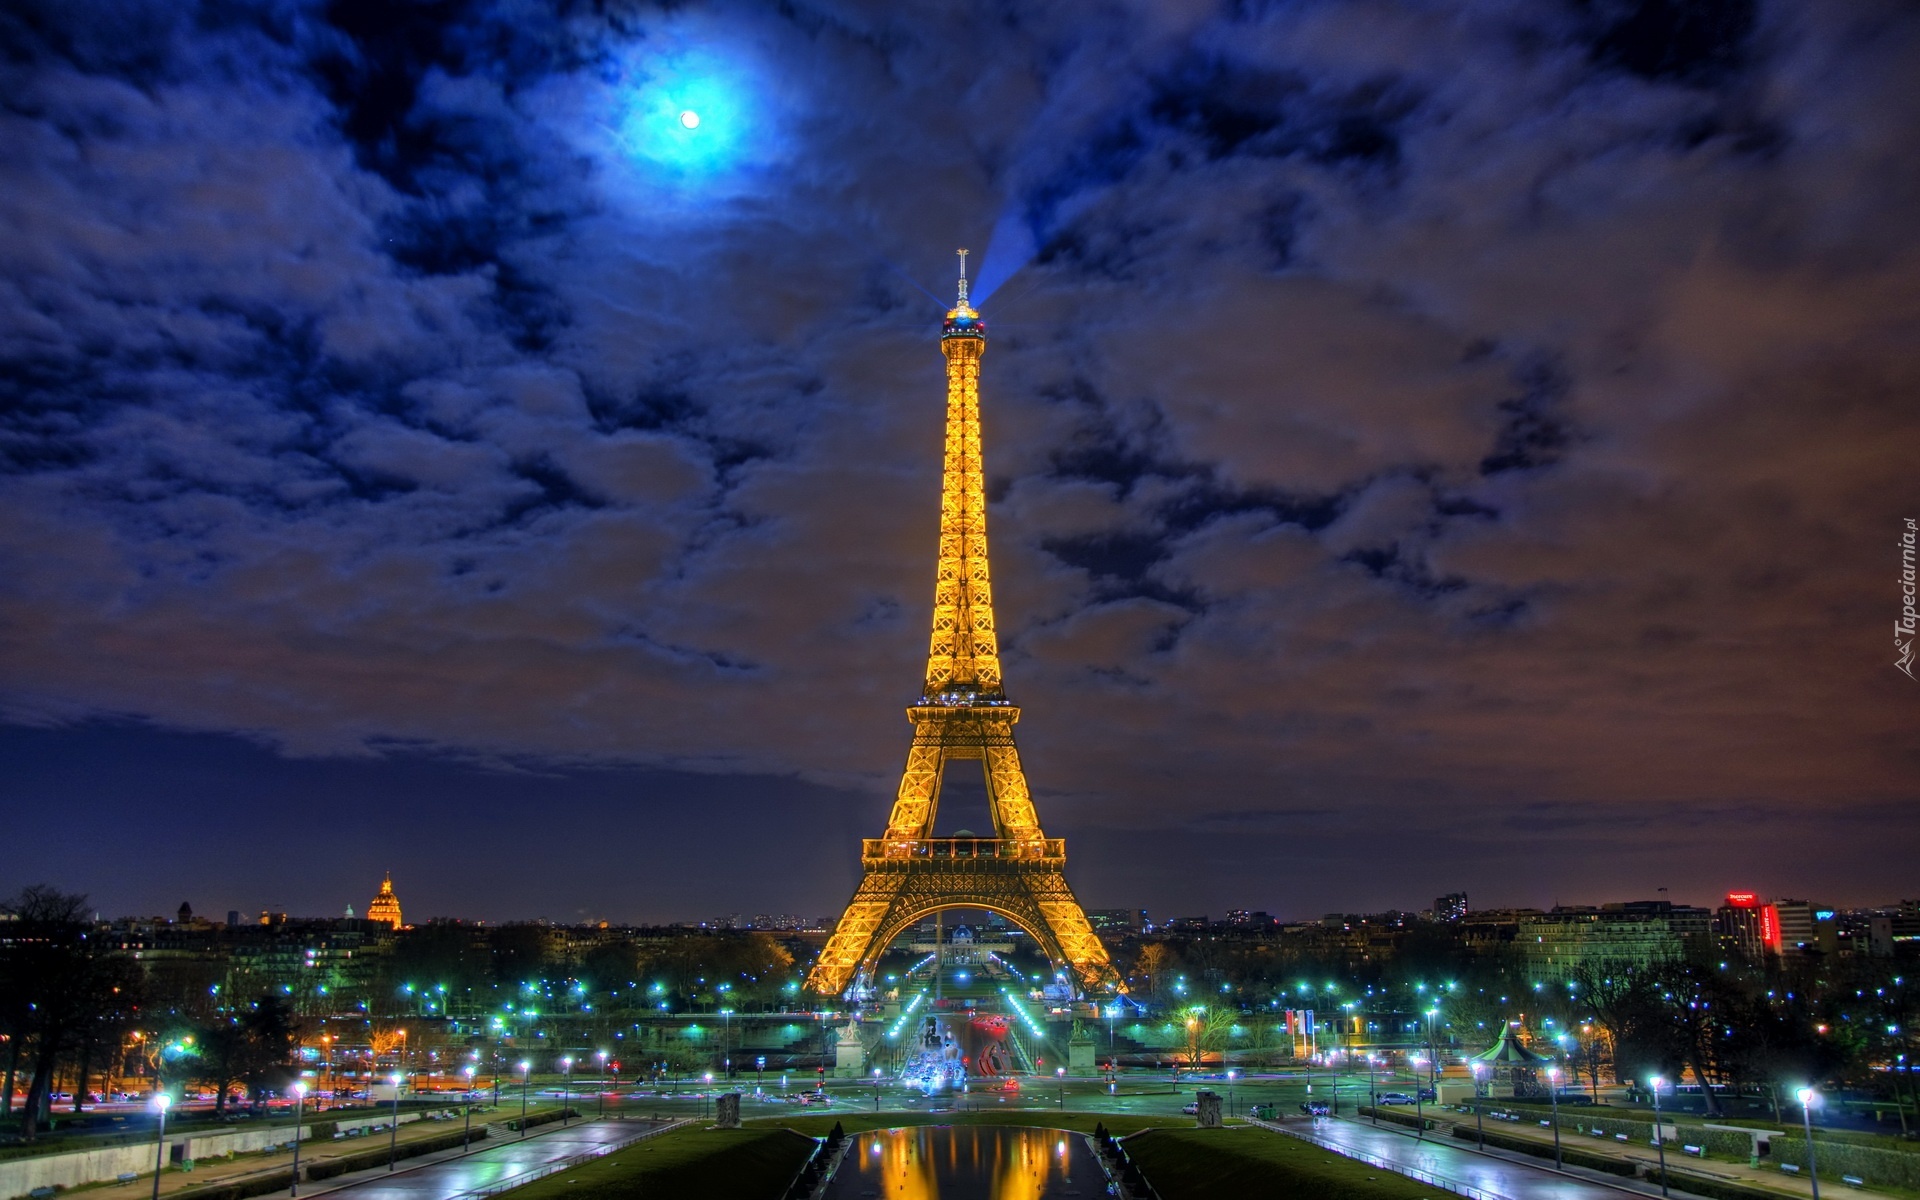 Wieża Eiffla, Noc, Paryż